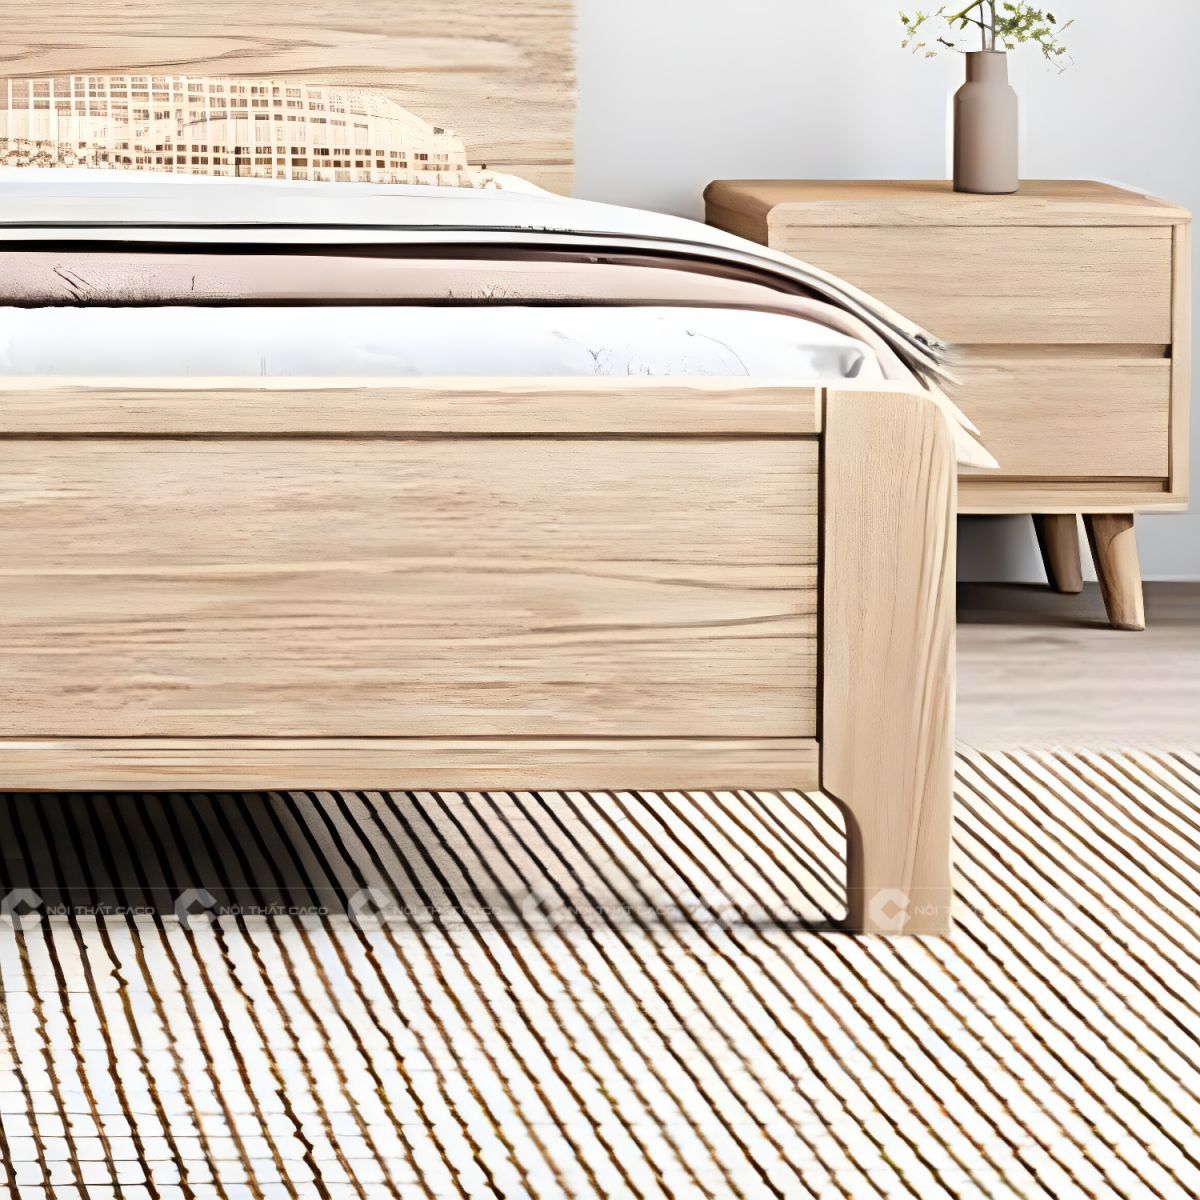 Giường ngủ gỗ tự nhiên chân thấp hiện đại